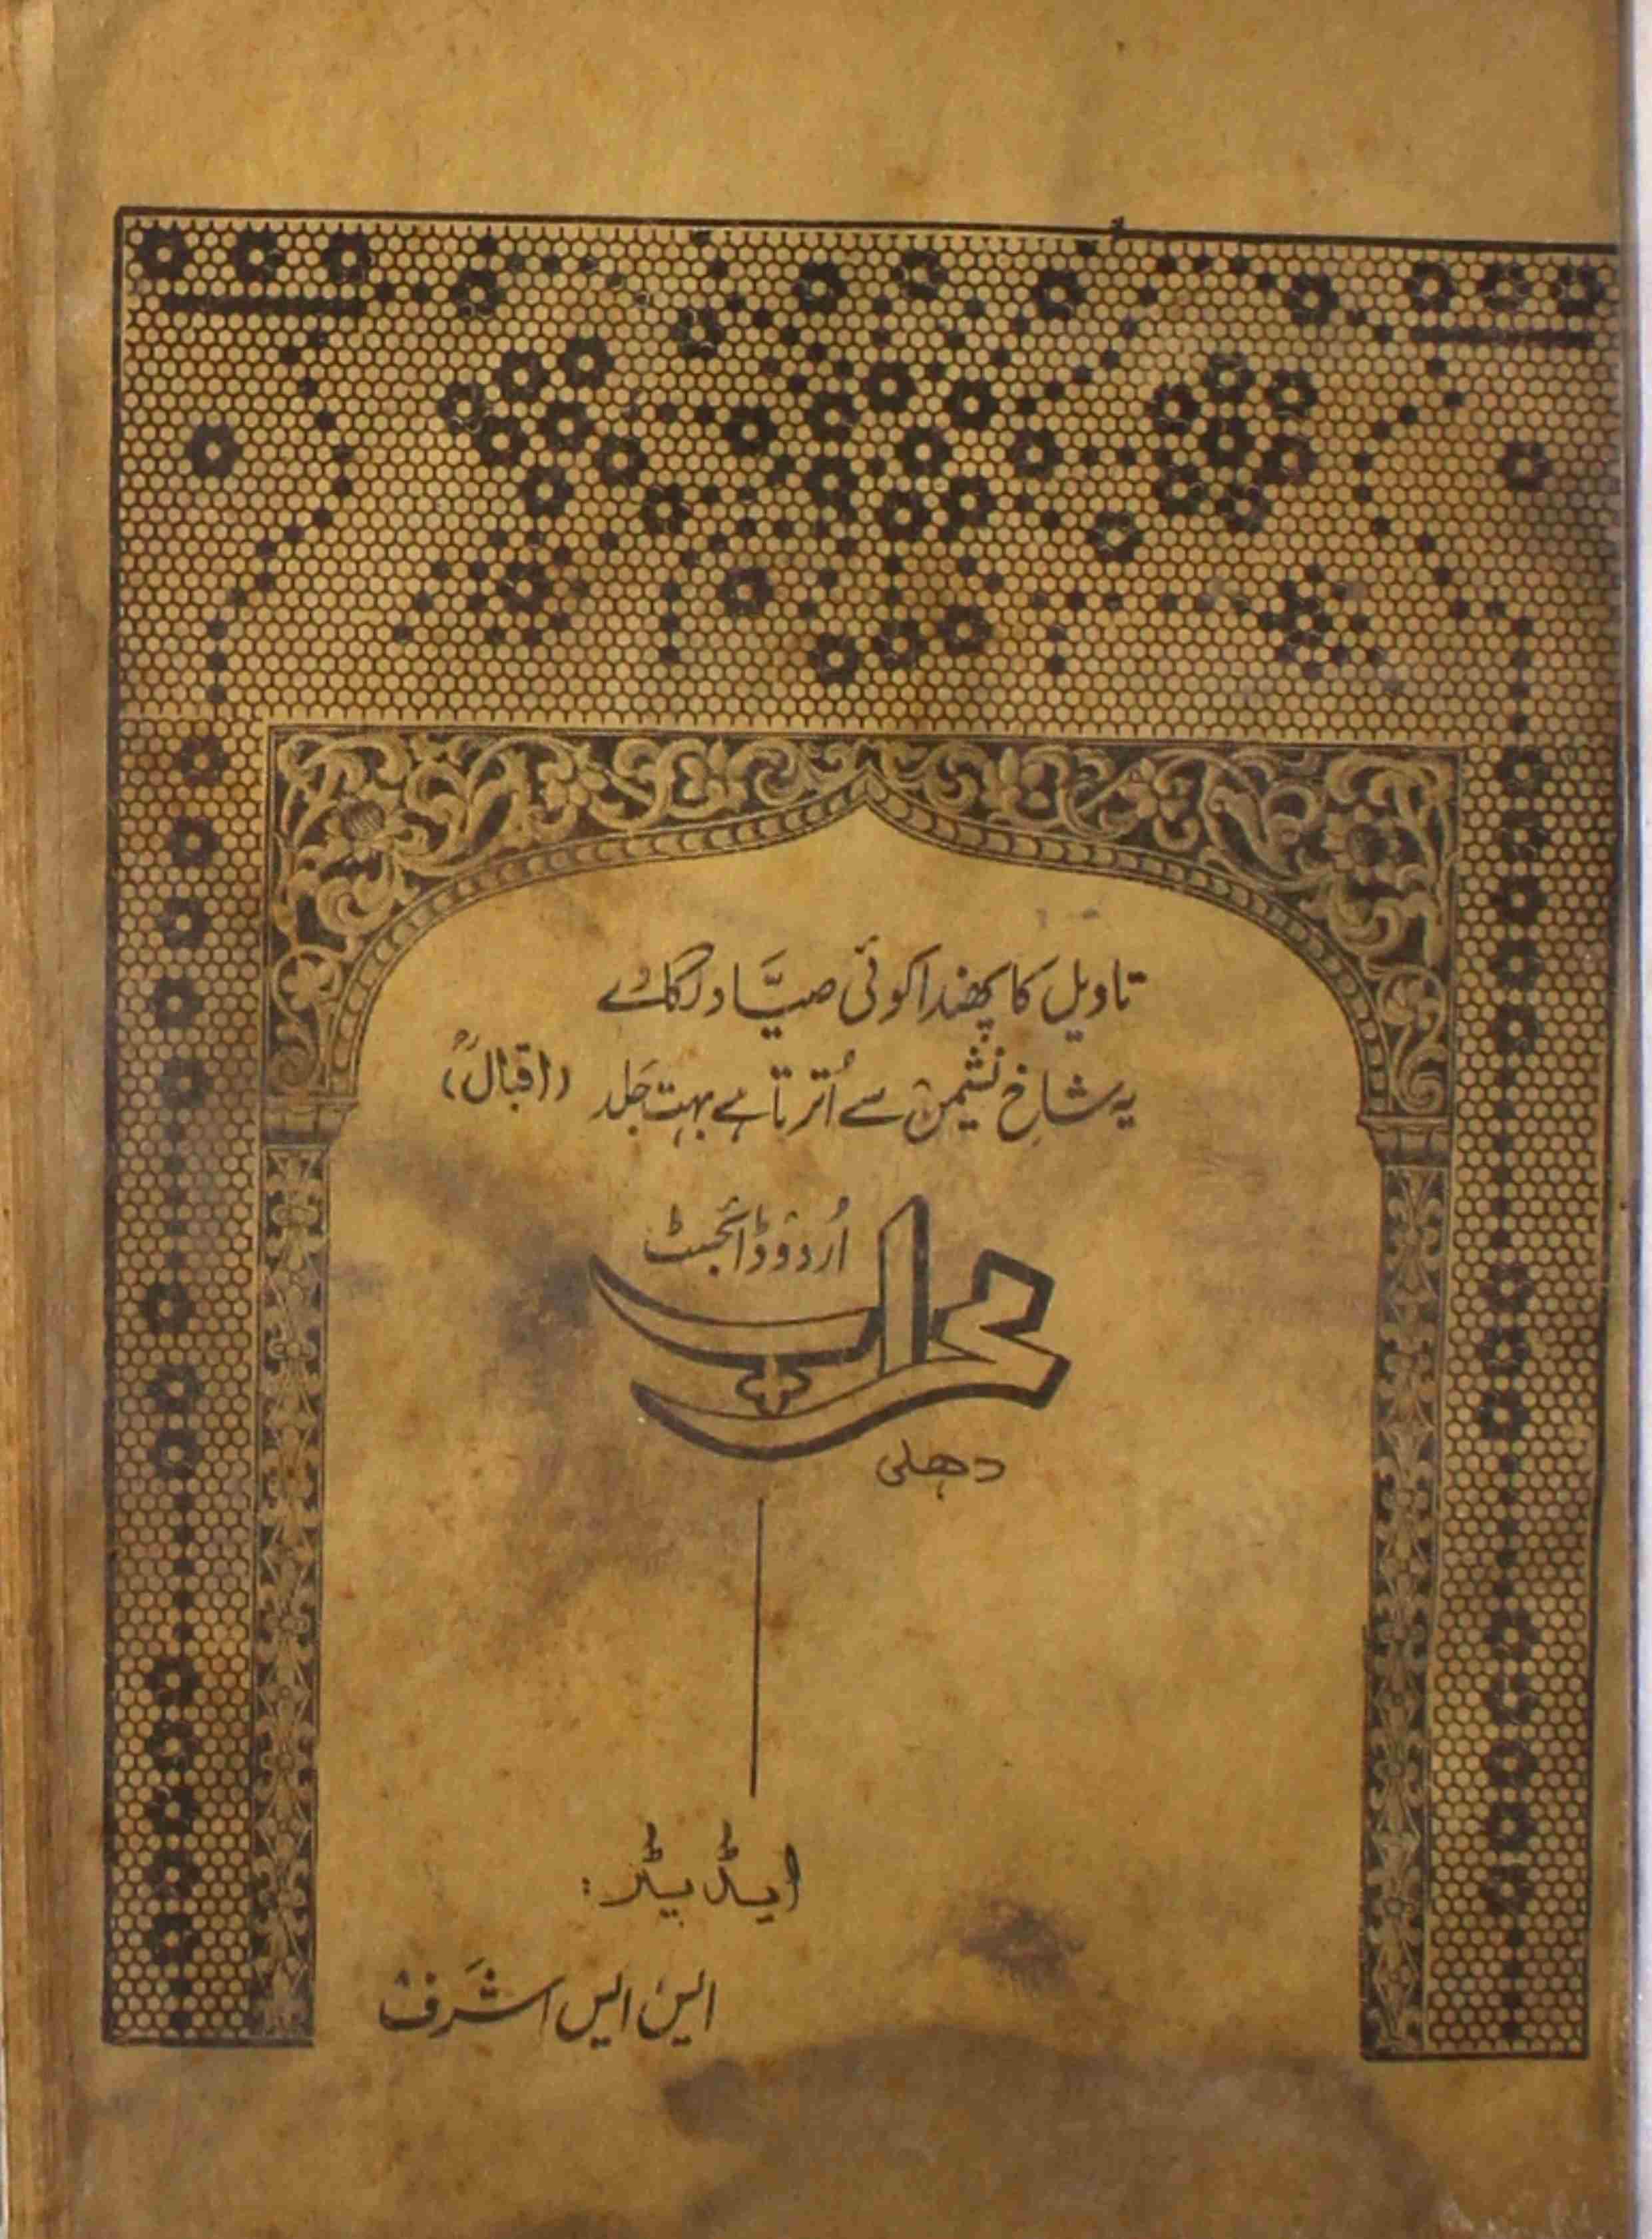 Mahraab Jild 5 Shumara No 7.8.9.Sep 1975-SVK-Shumara Number-007, 008, 009